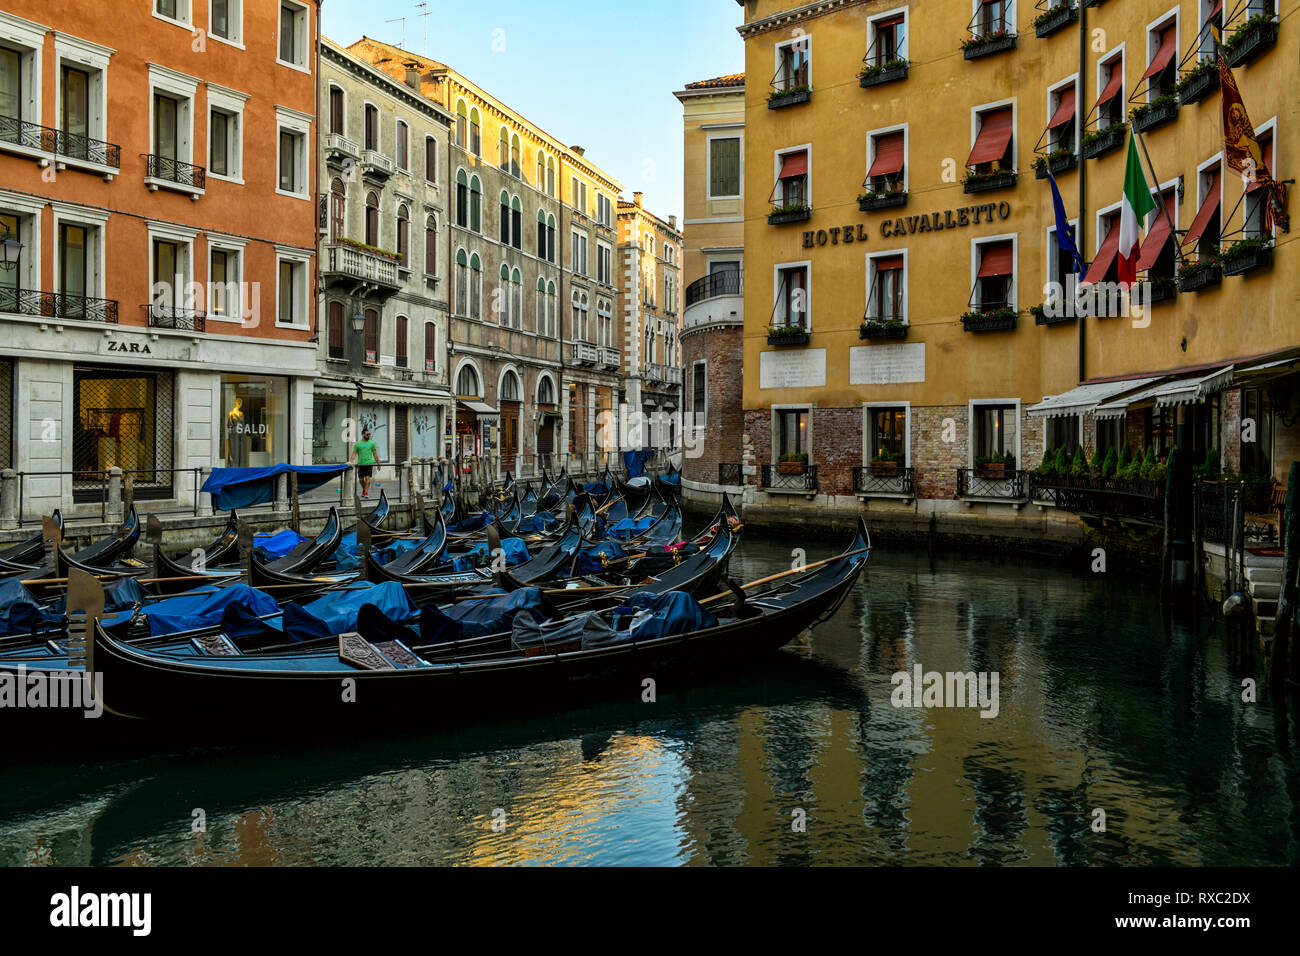 Hotel Cavaletto, Venice (Venezia), Italy Stock Photo